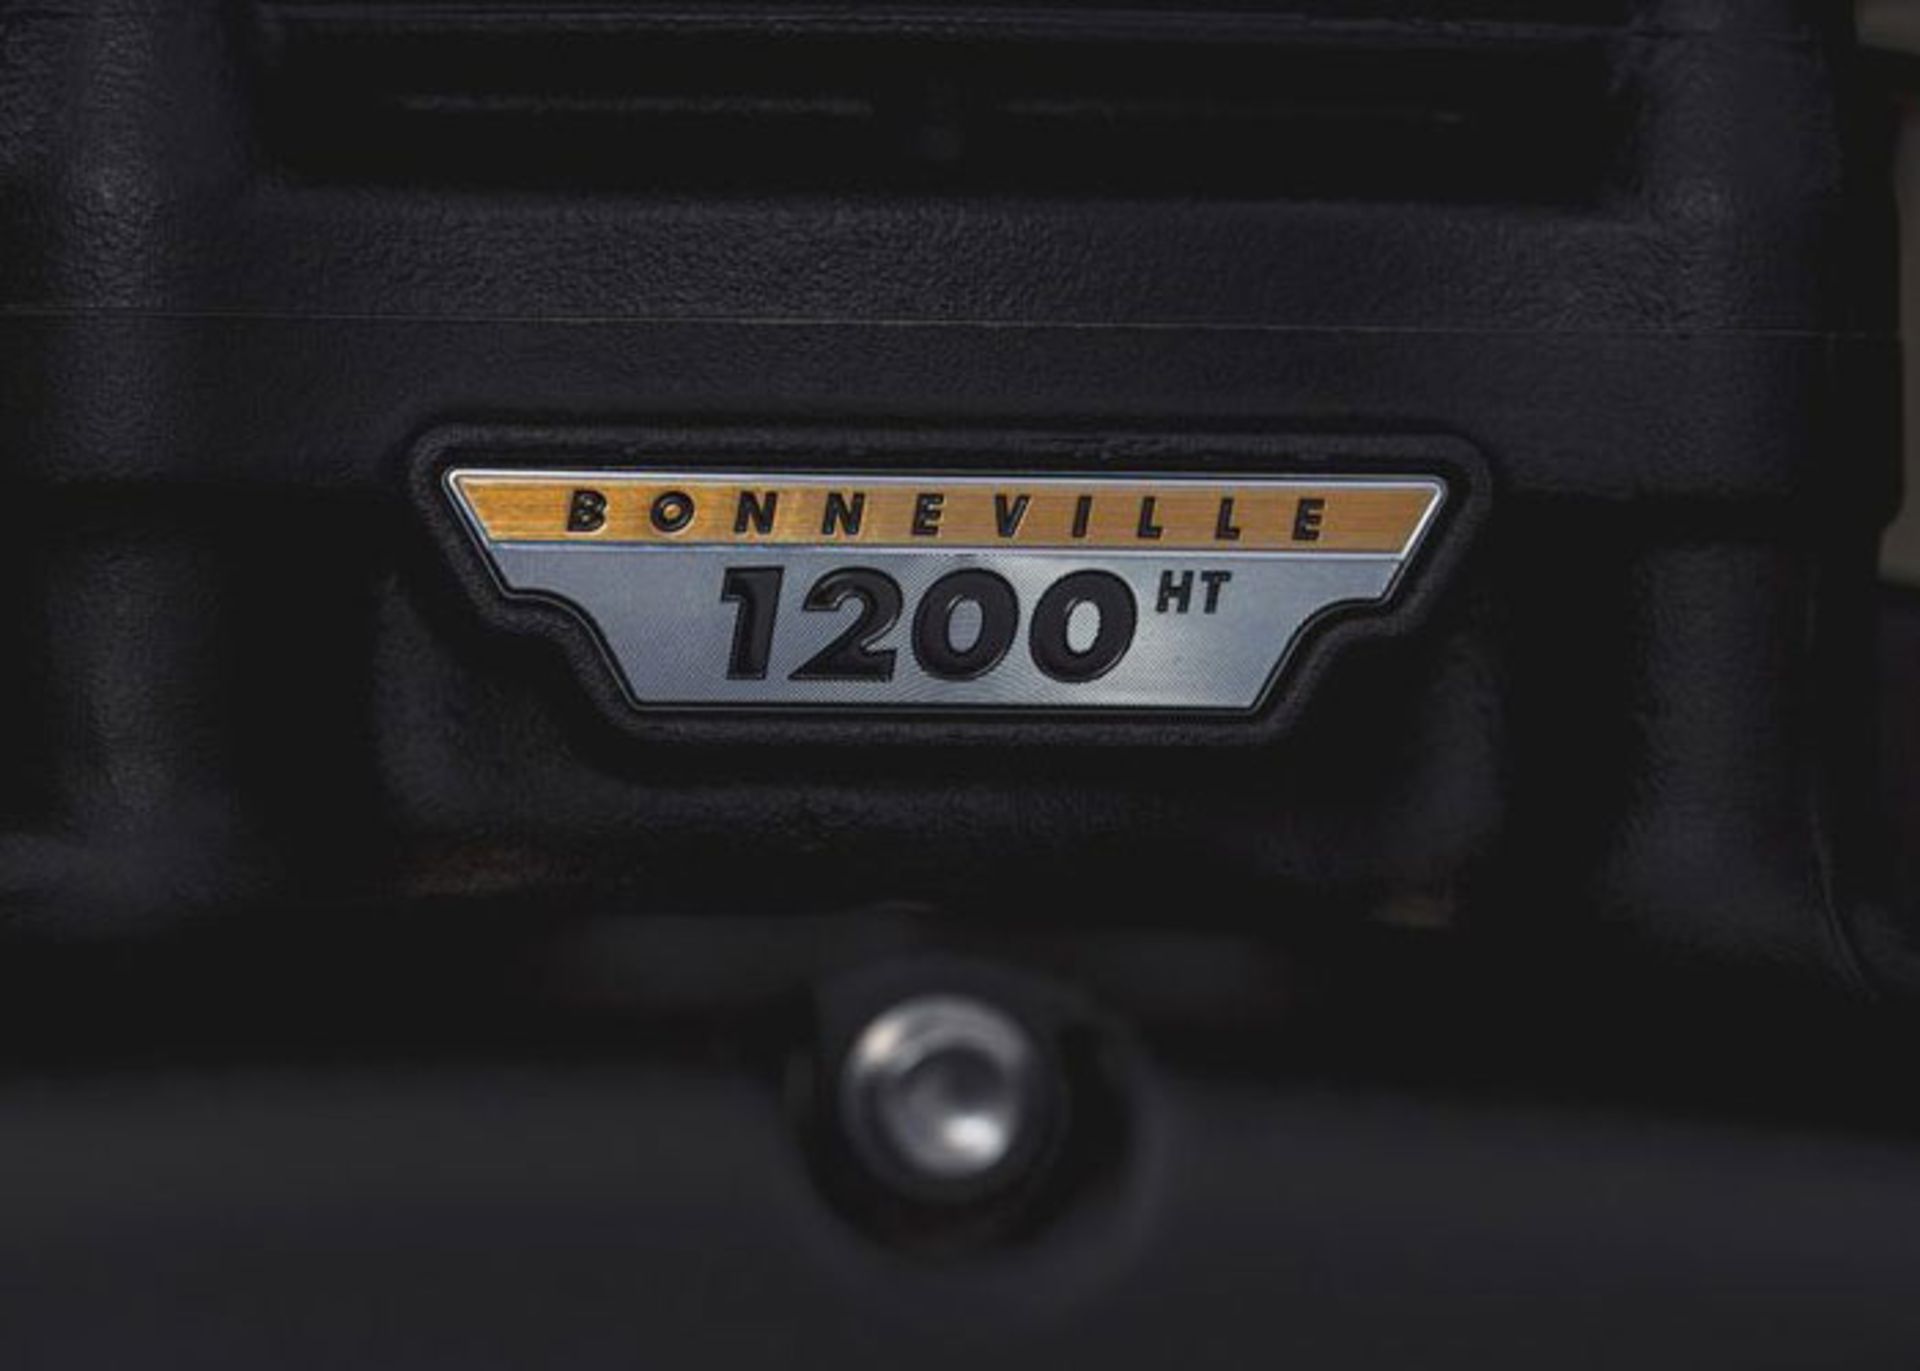 مرجع متخصصين ايران موتورسيكلت Triumph Bonneville Bobber Black